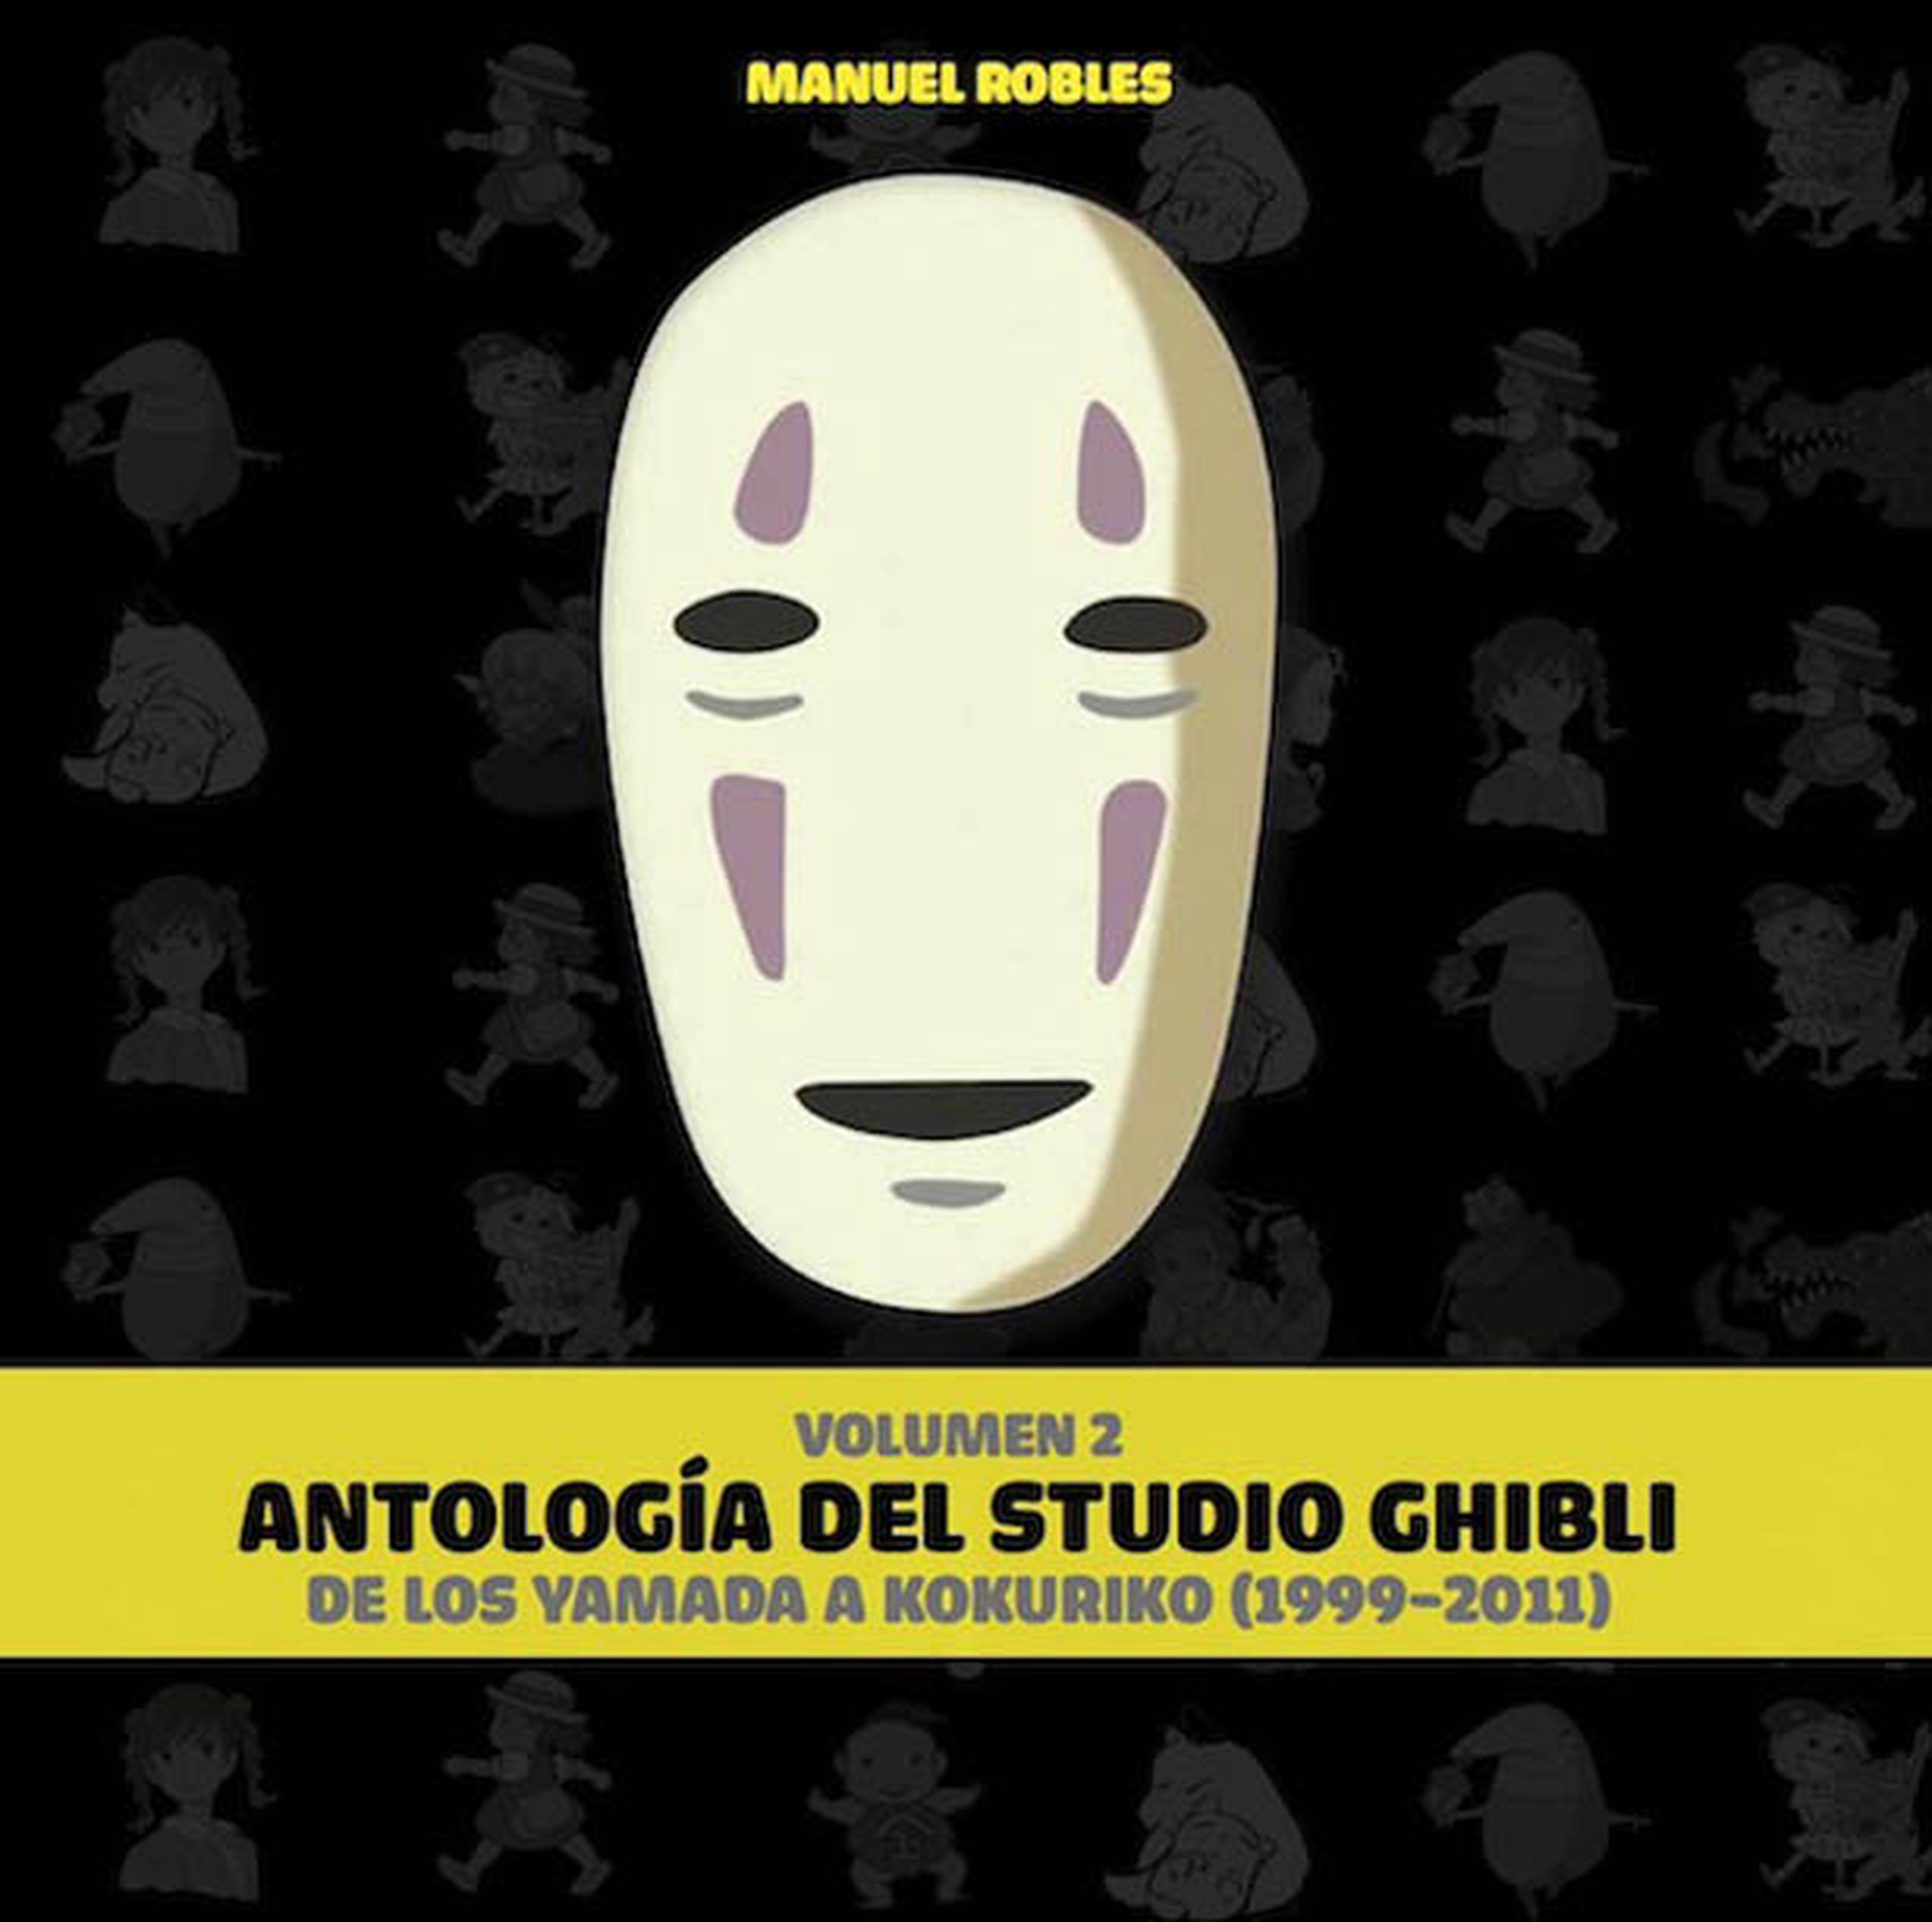 Descubre el segundo volumen de Antología del Studio Ghibli